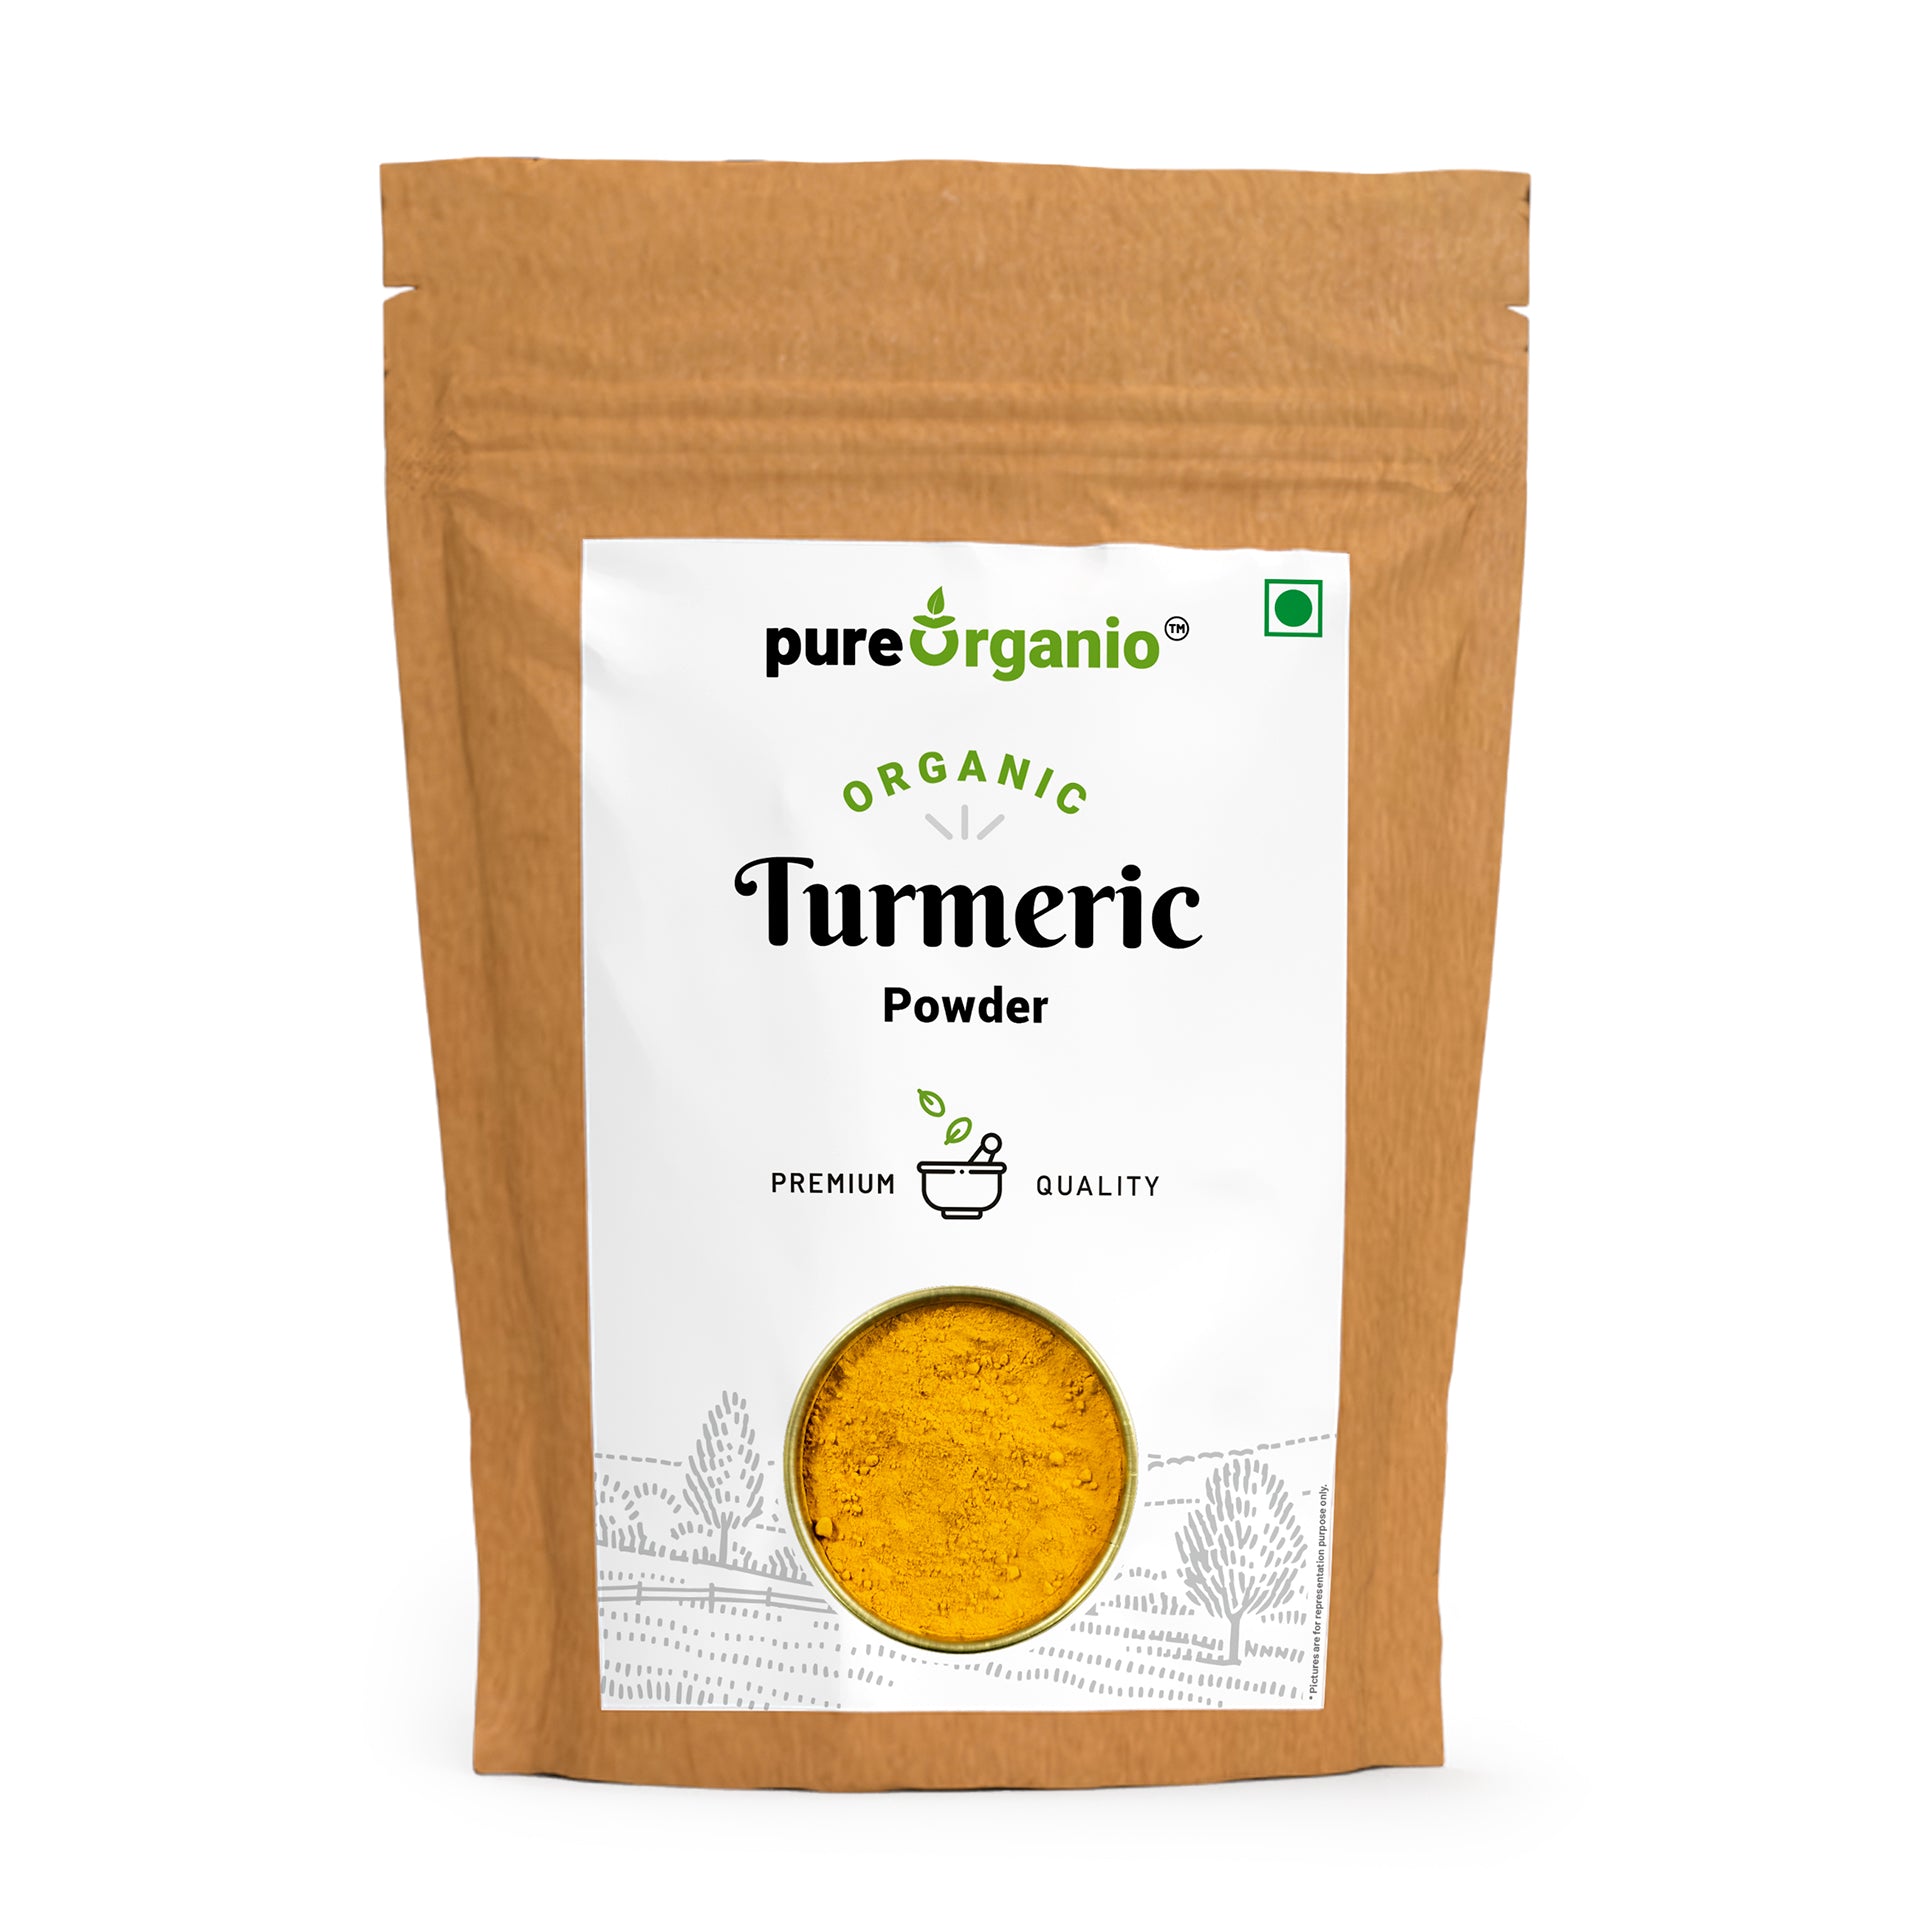 Organic Turmeric Powder - Organic Haldi Powder